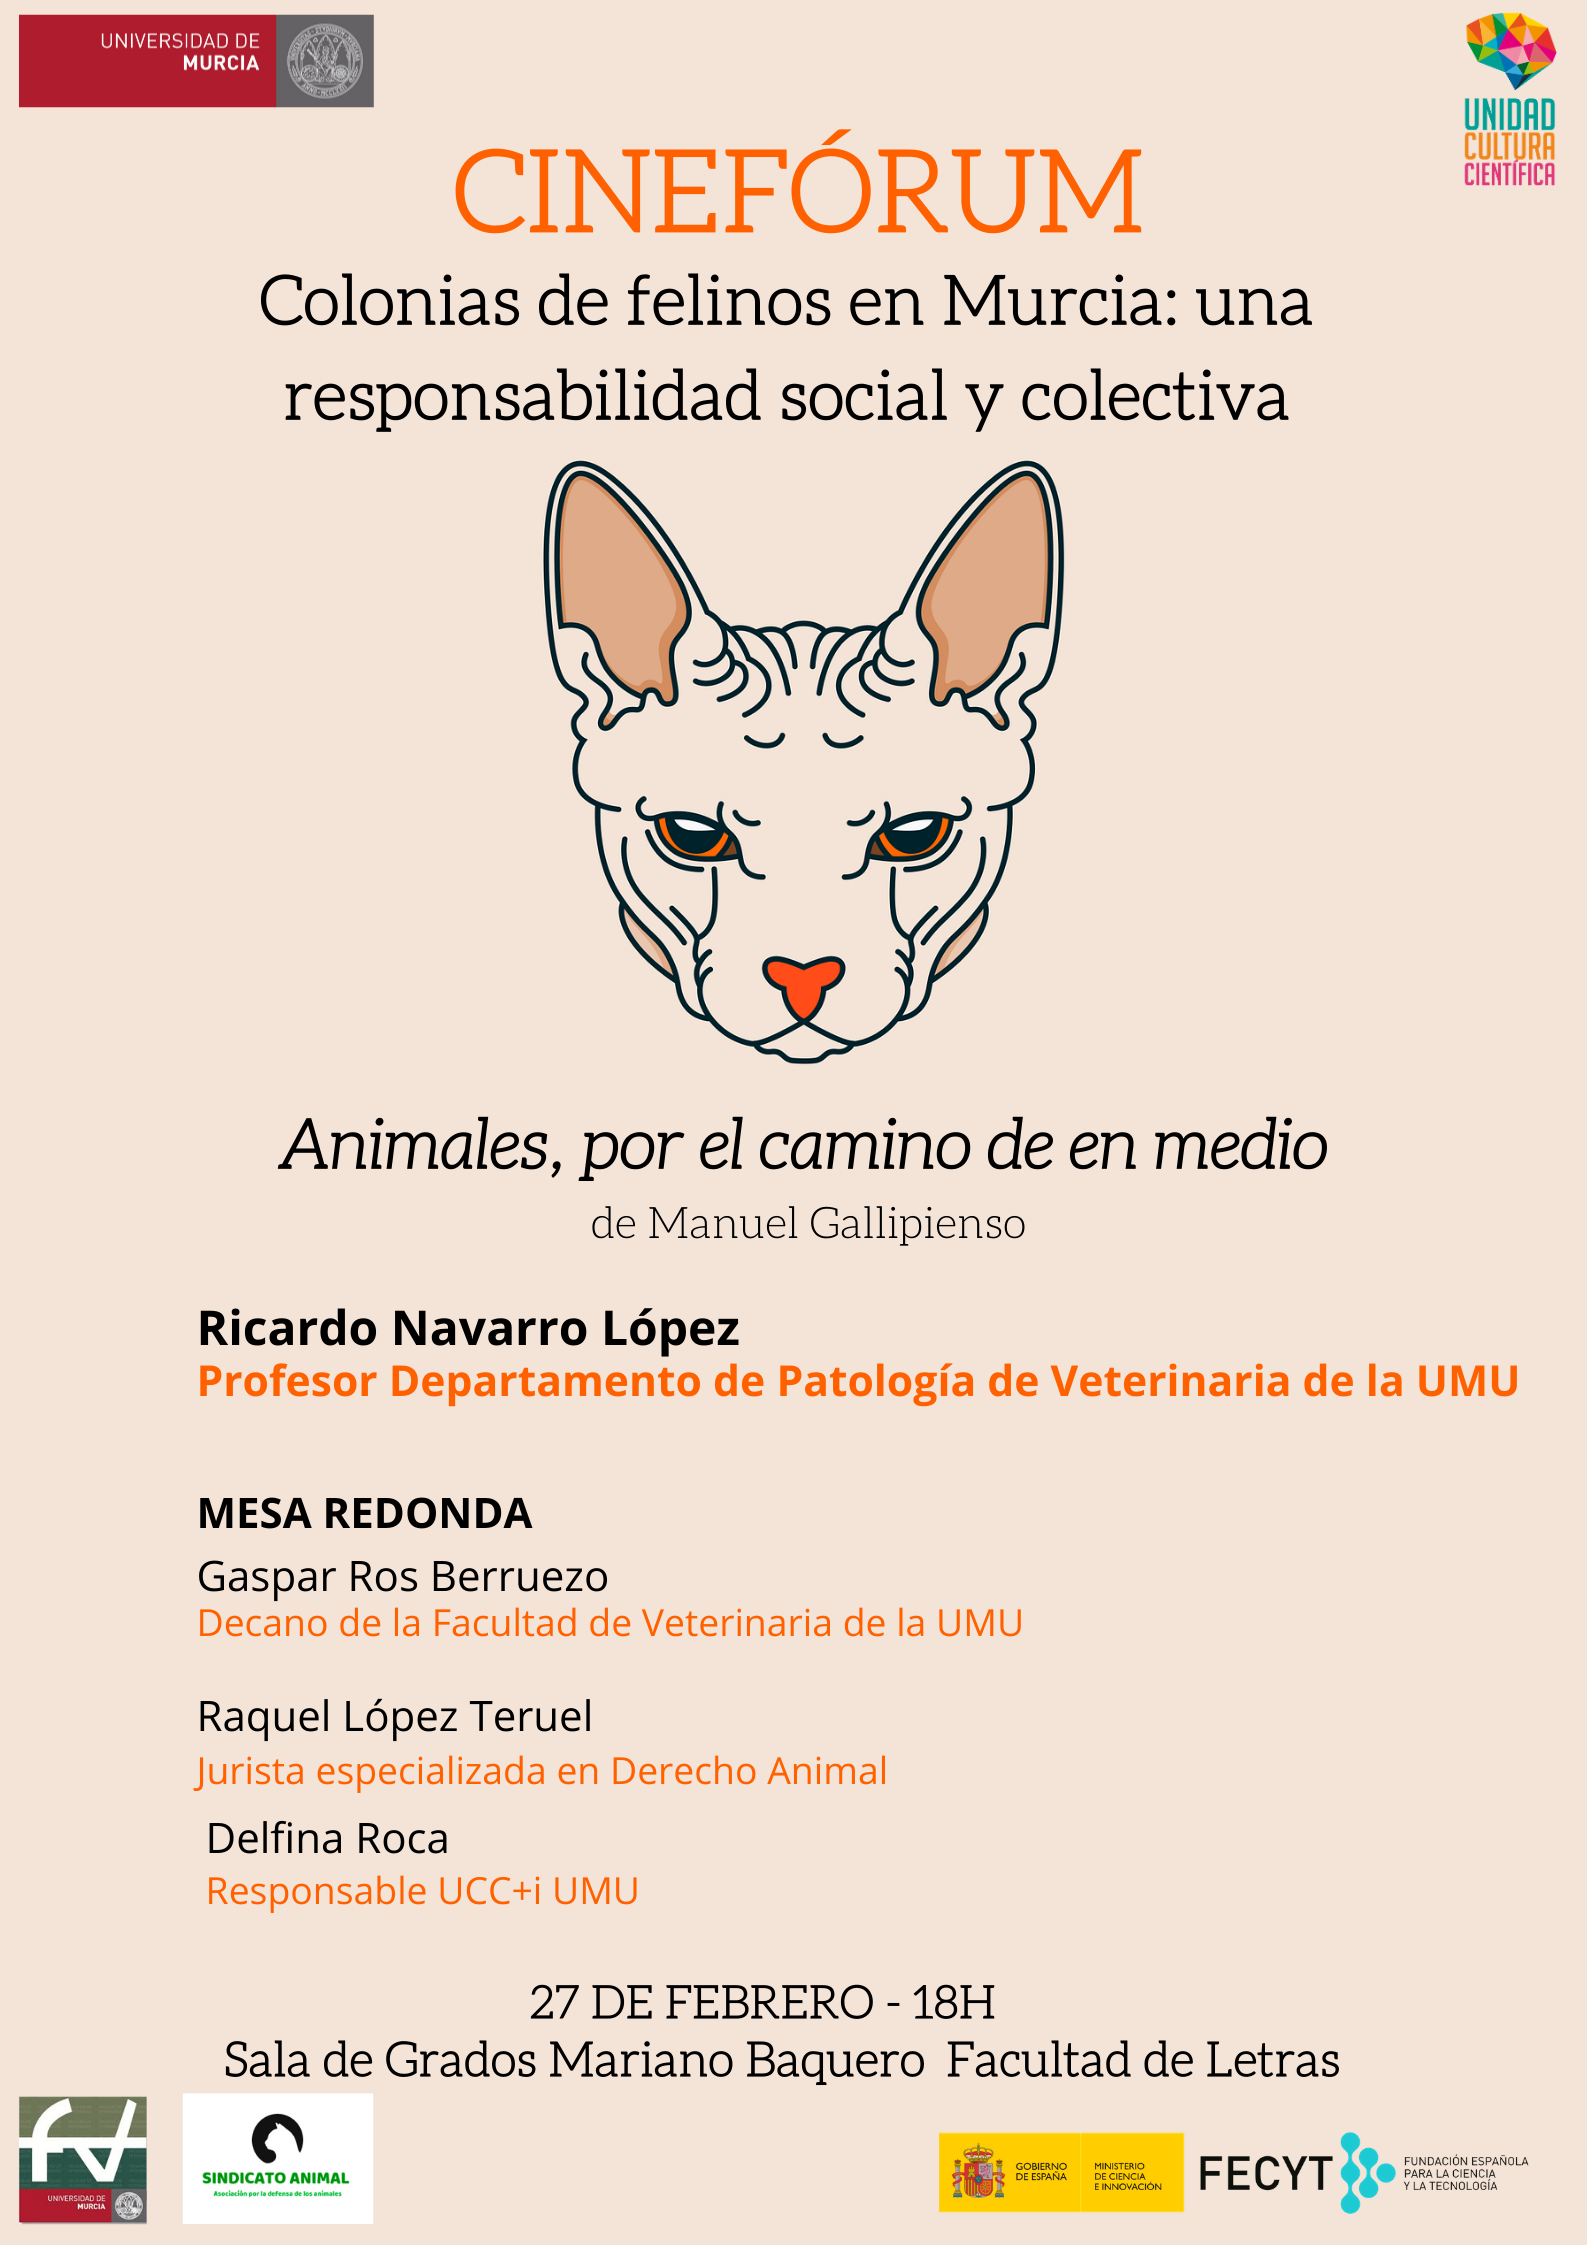 Cineforum - Colonias de felinos en Murcia: una responsabilidad social colectiva